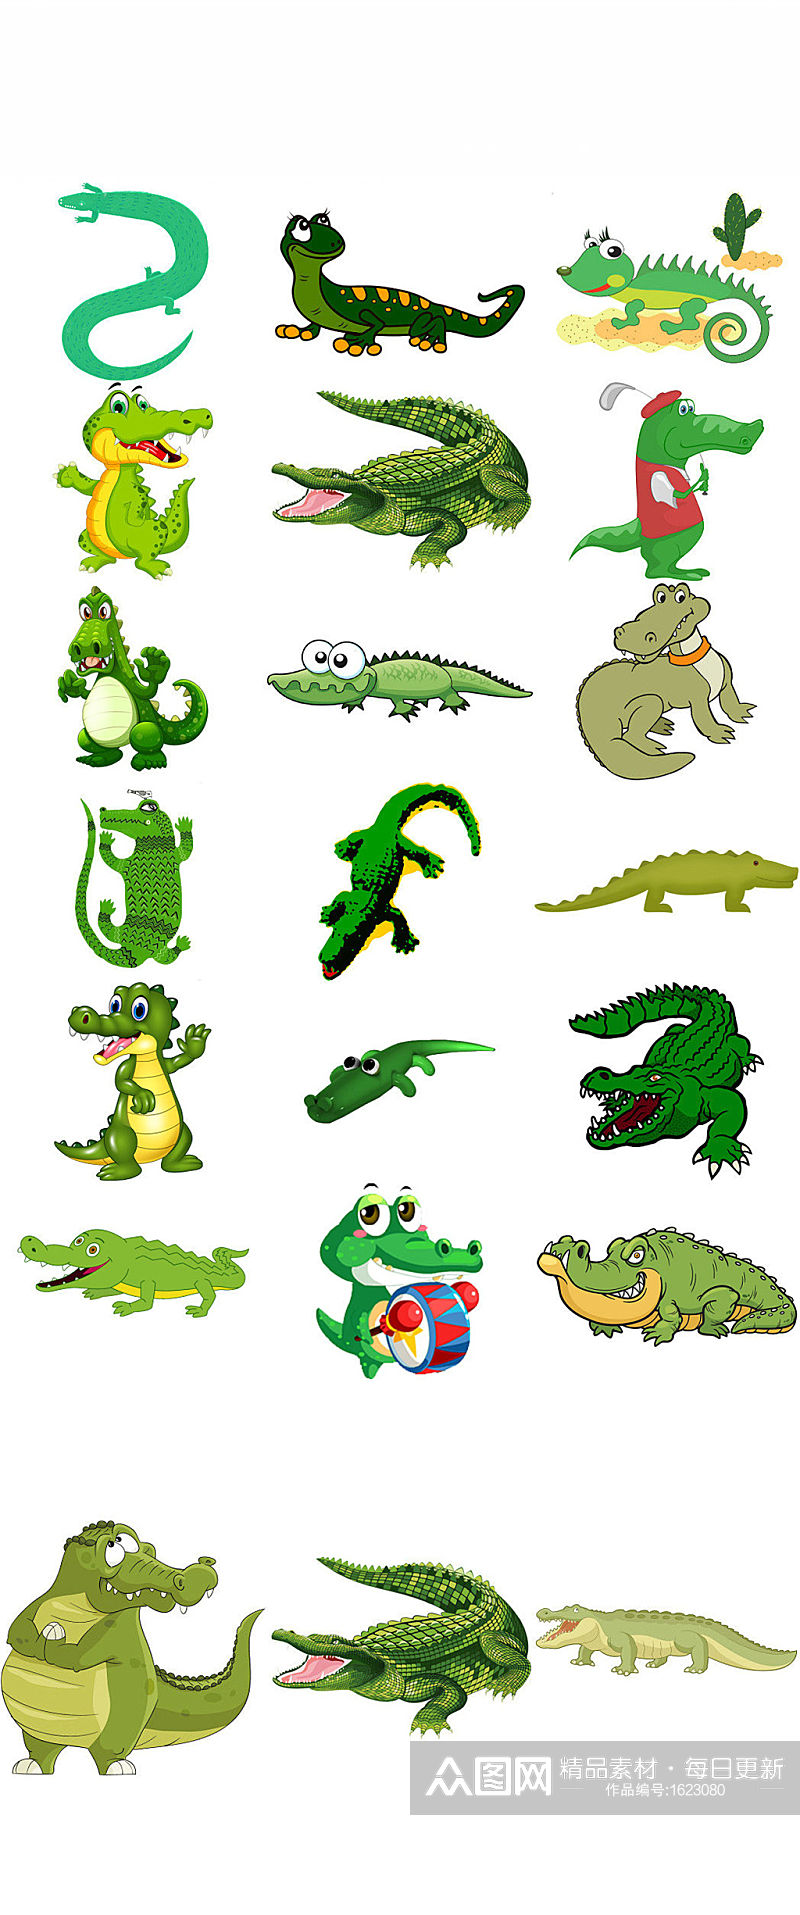 可爱卡通动物鳄鱼设计素材png图片素材